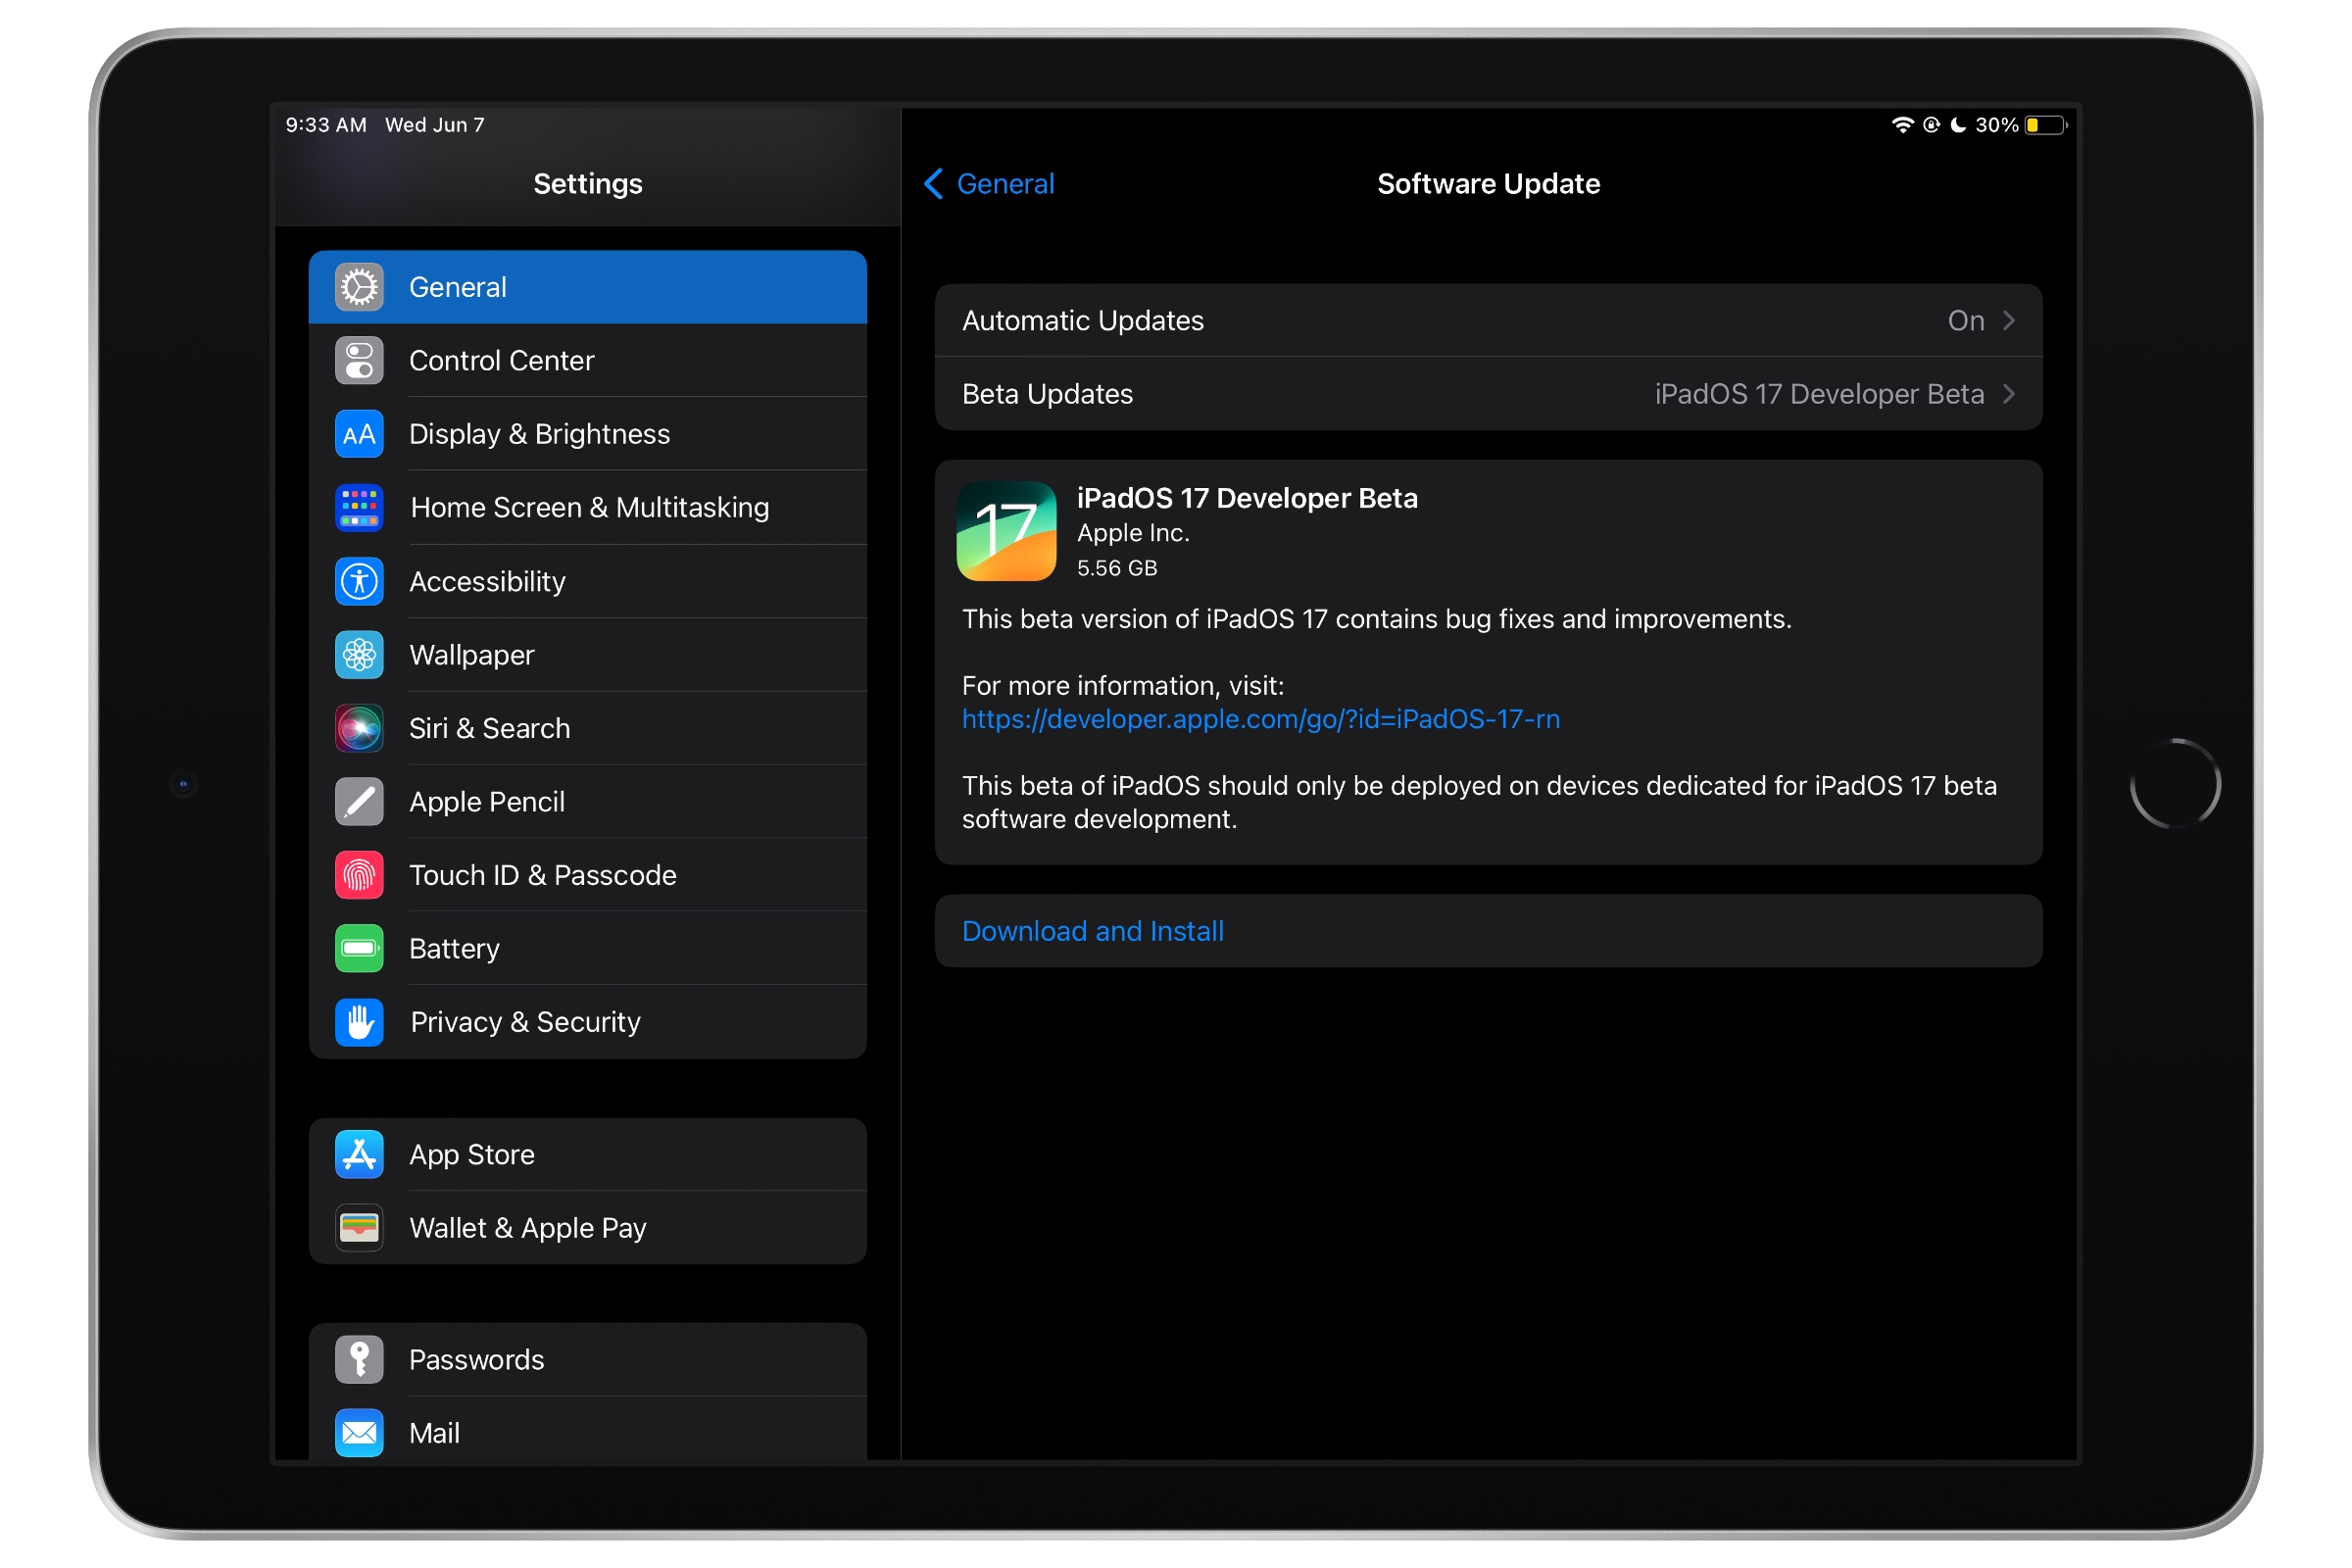 iPad mostrando a tela de atualização de software com iPadOS 17 Developer Beta 1.